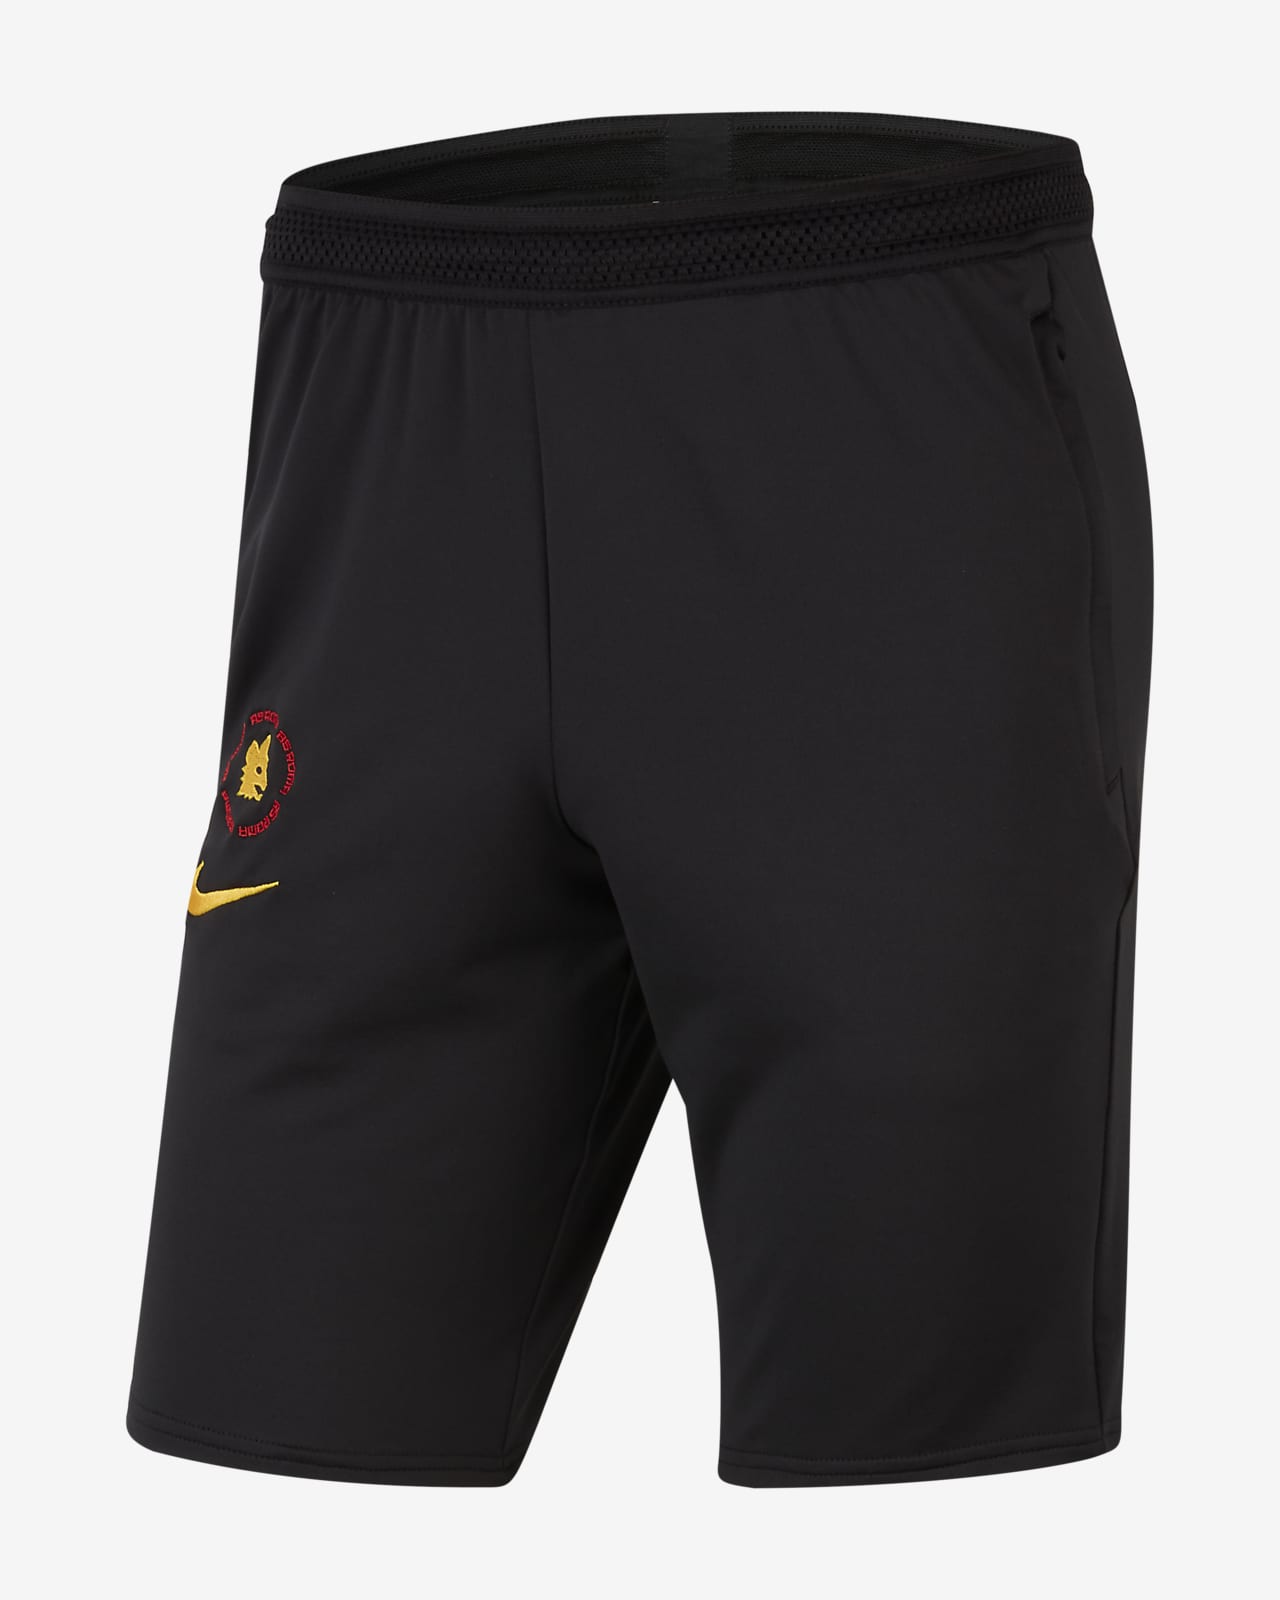 AS Roma Men's Football Shorts. Nike SA